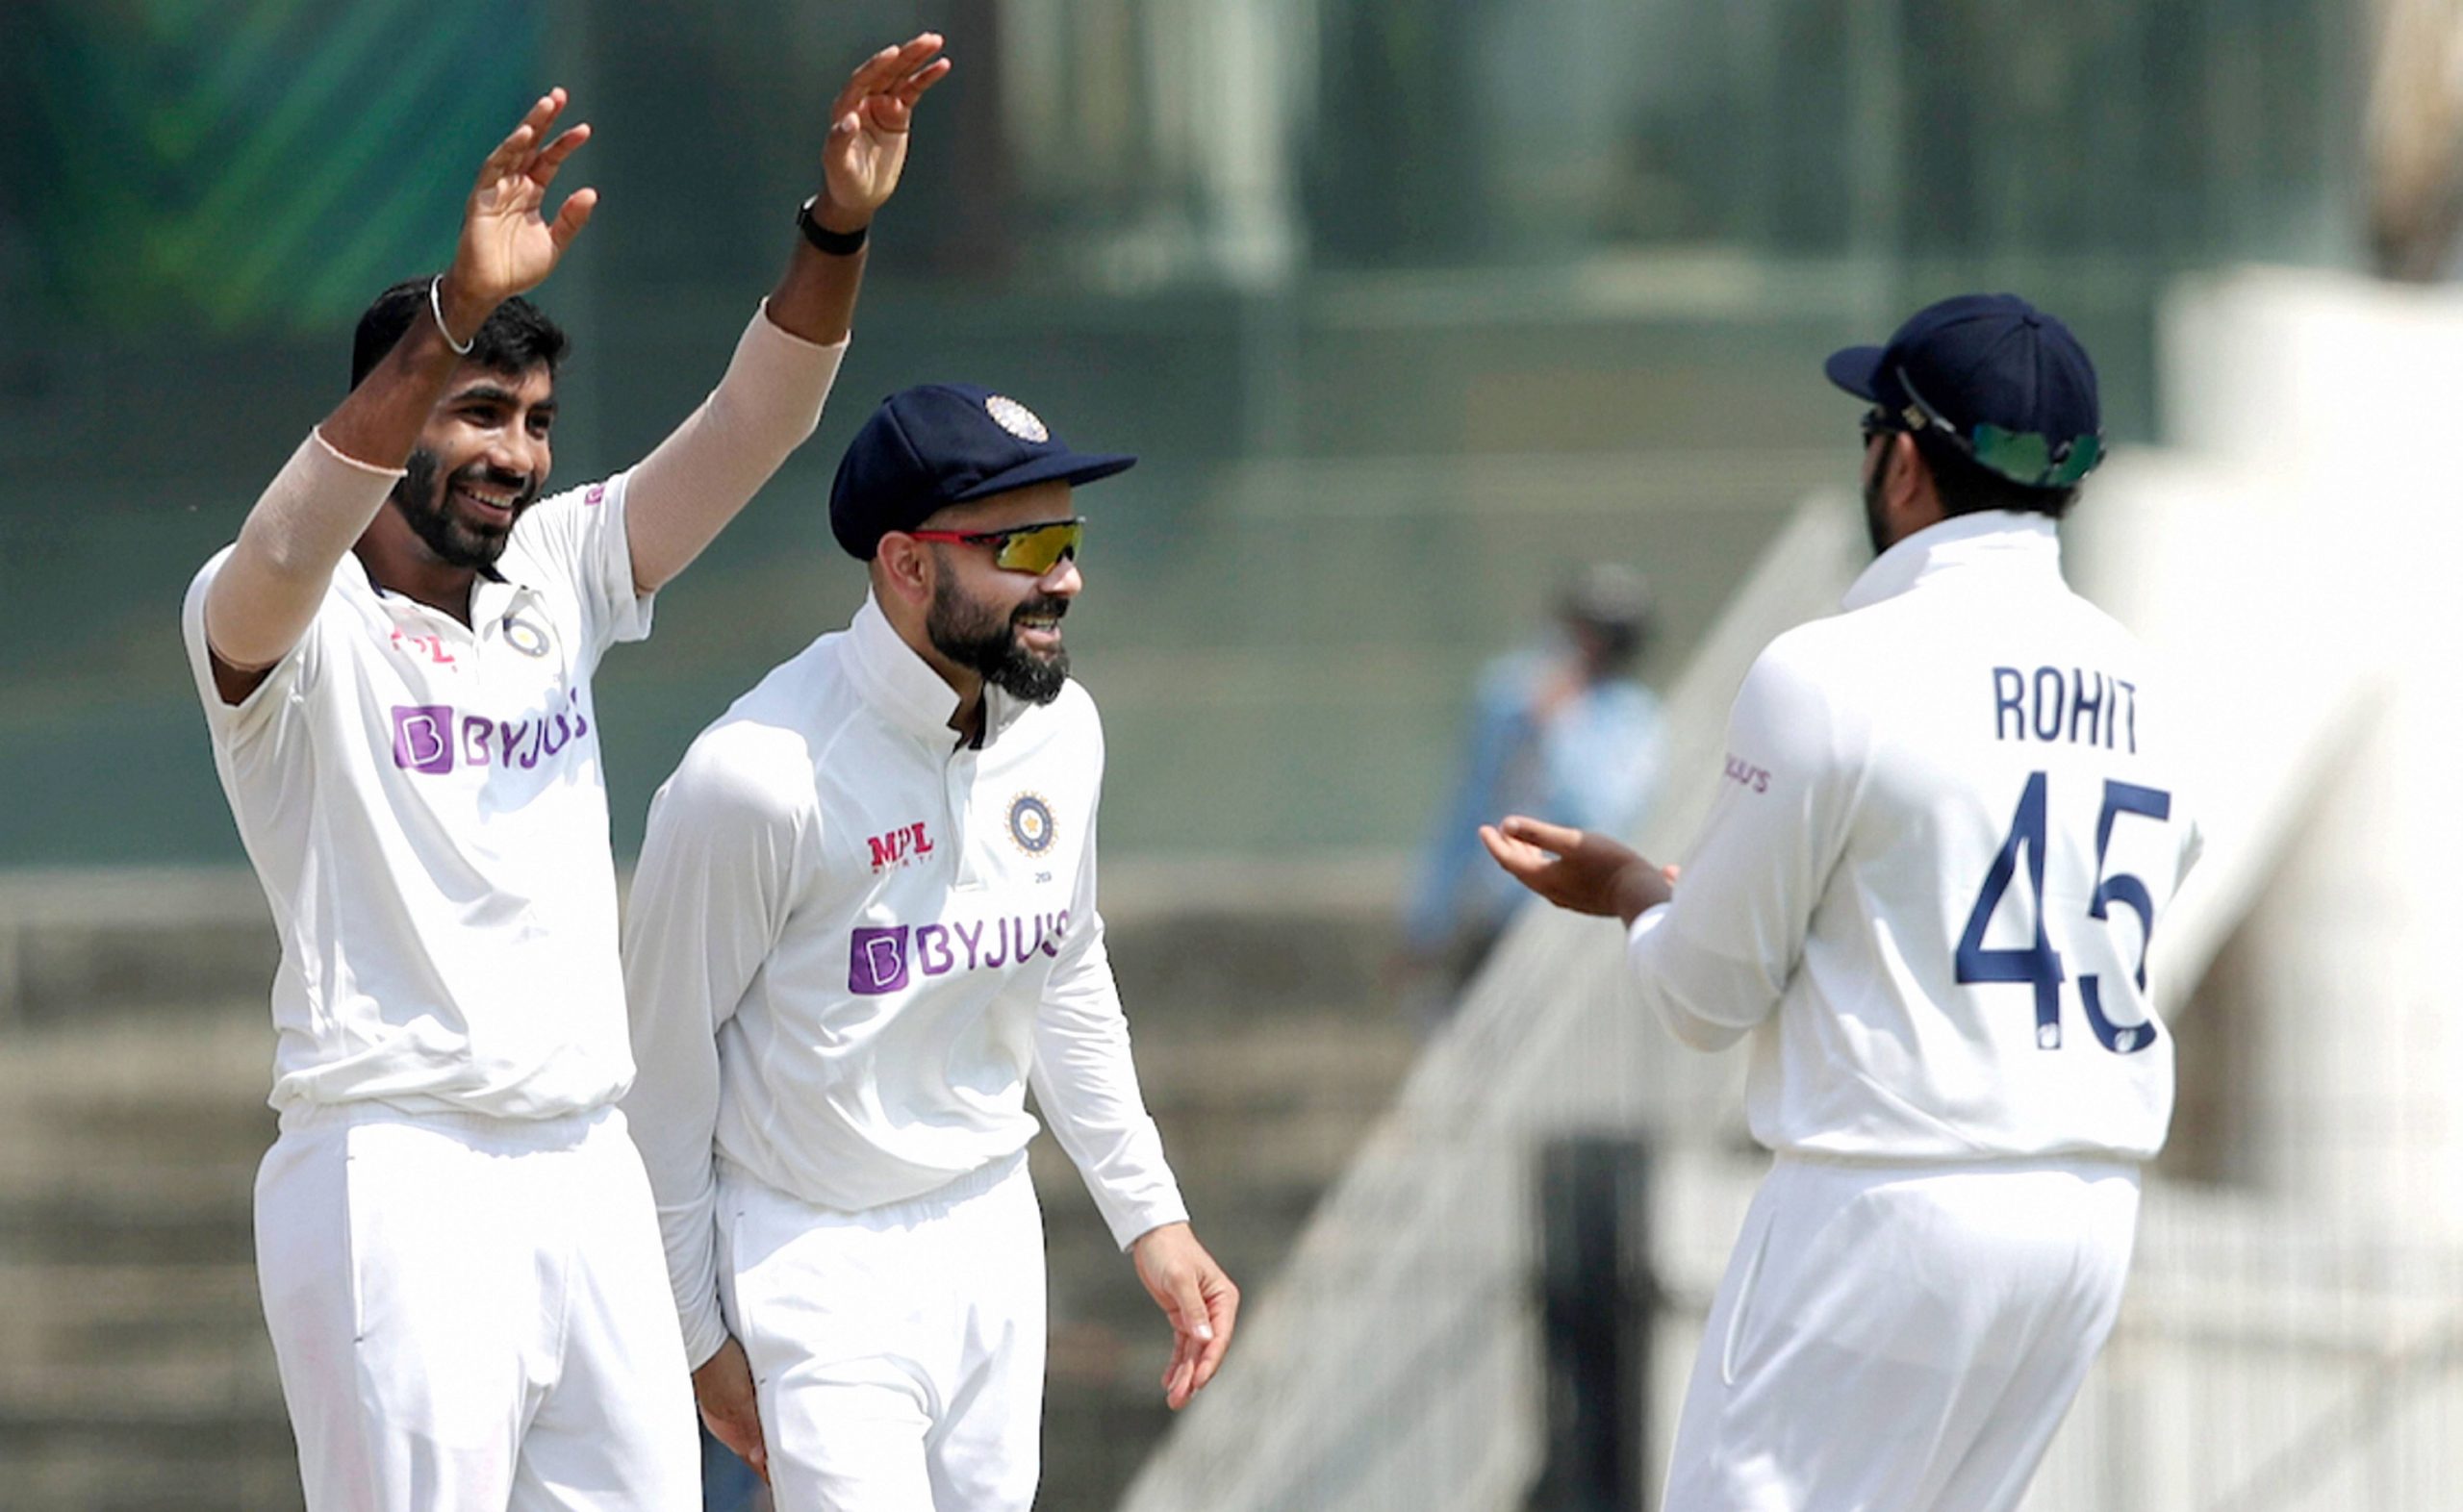 India vs England: Virat Kohli, Rohit Sharma’s picture from Chennai test triggers meme fest